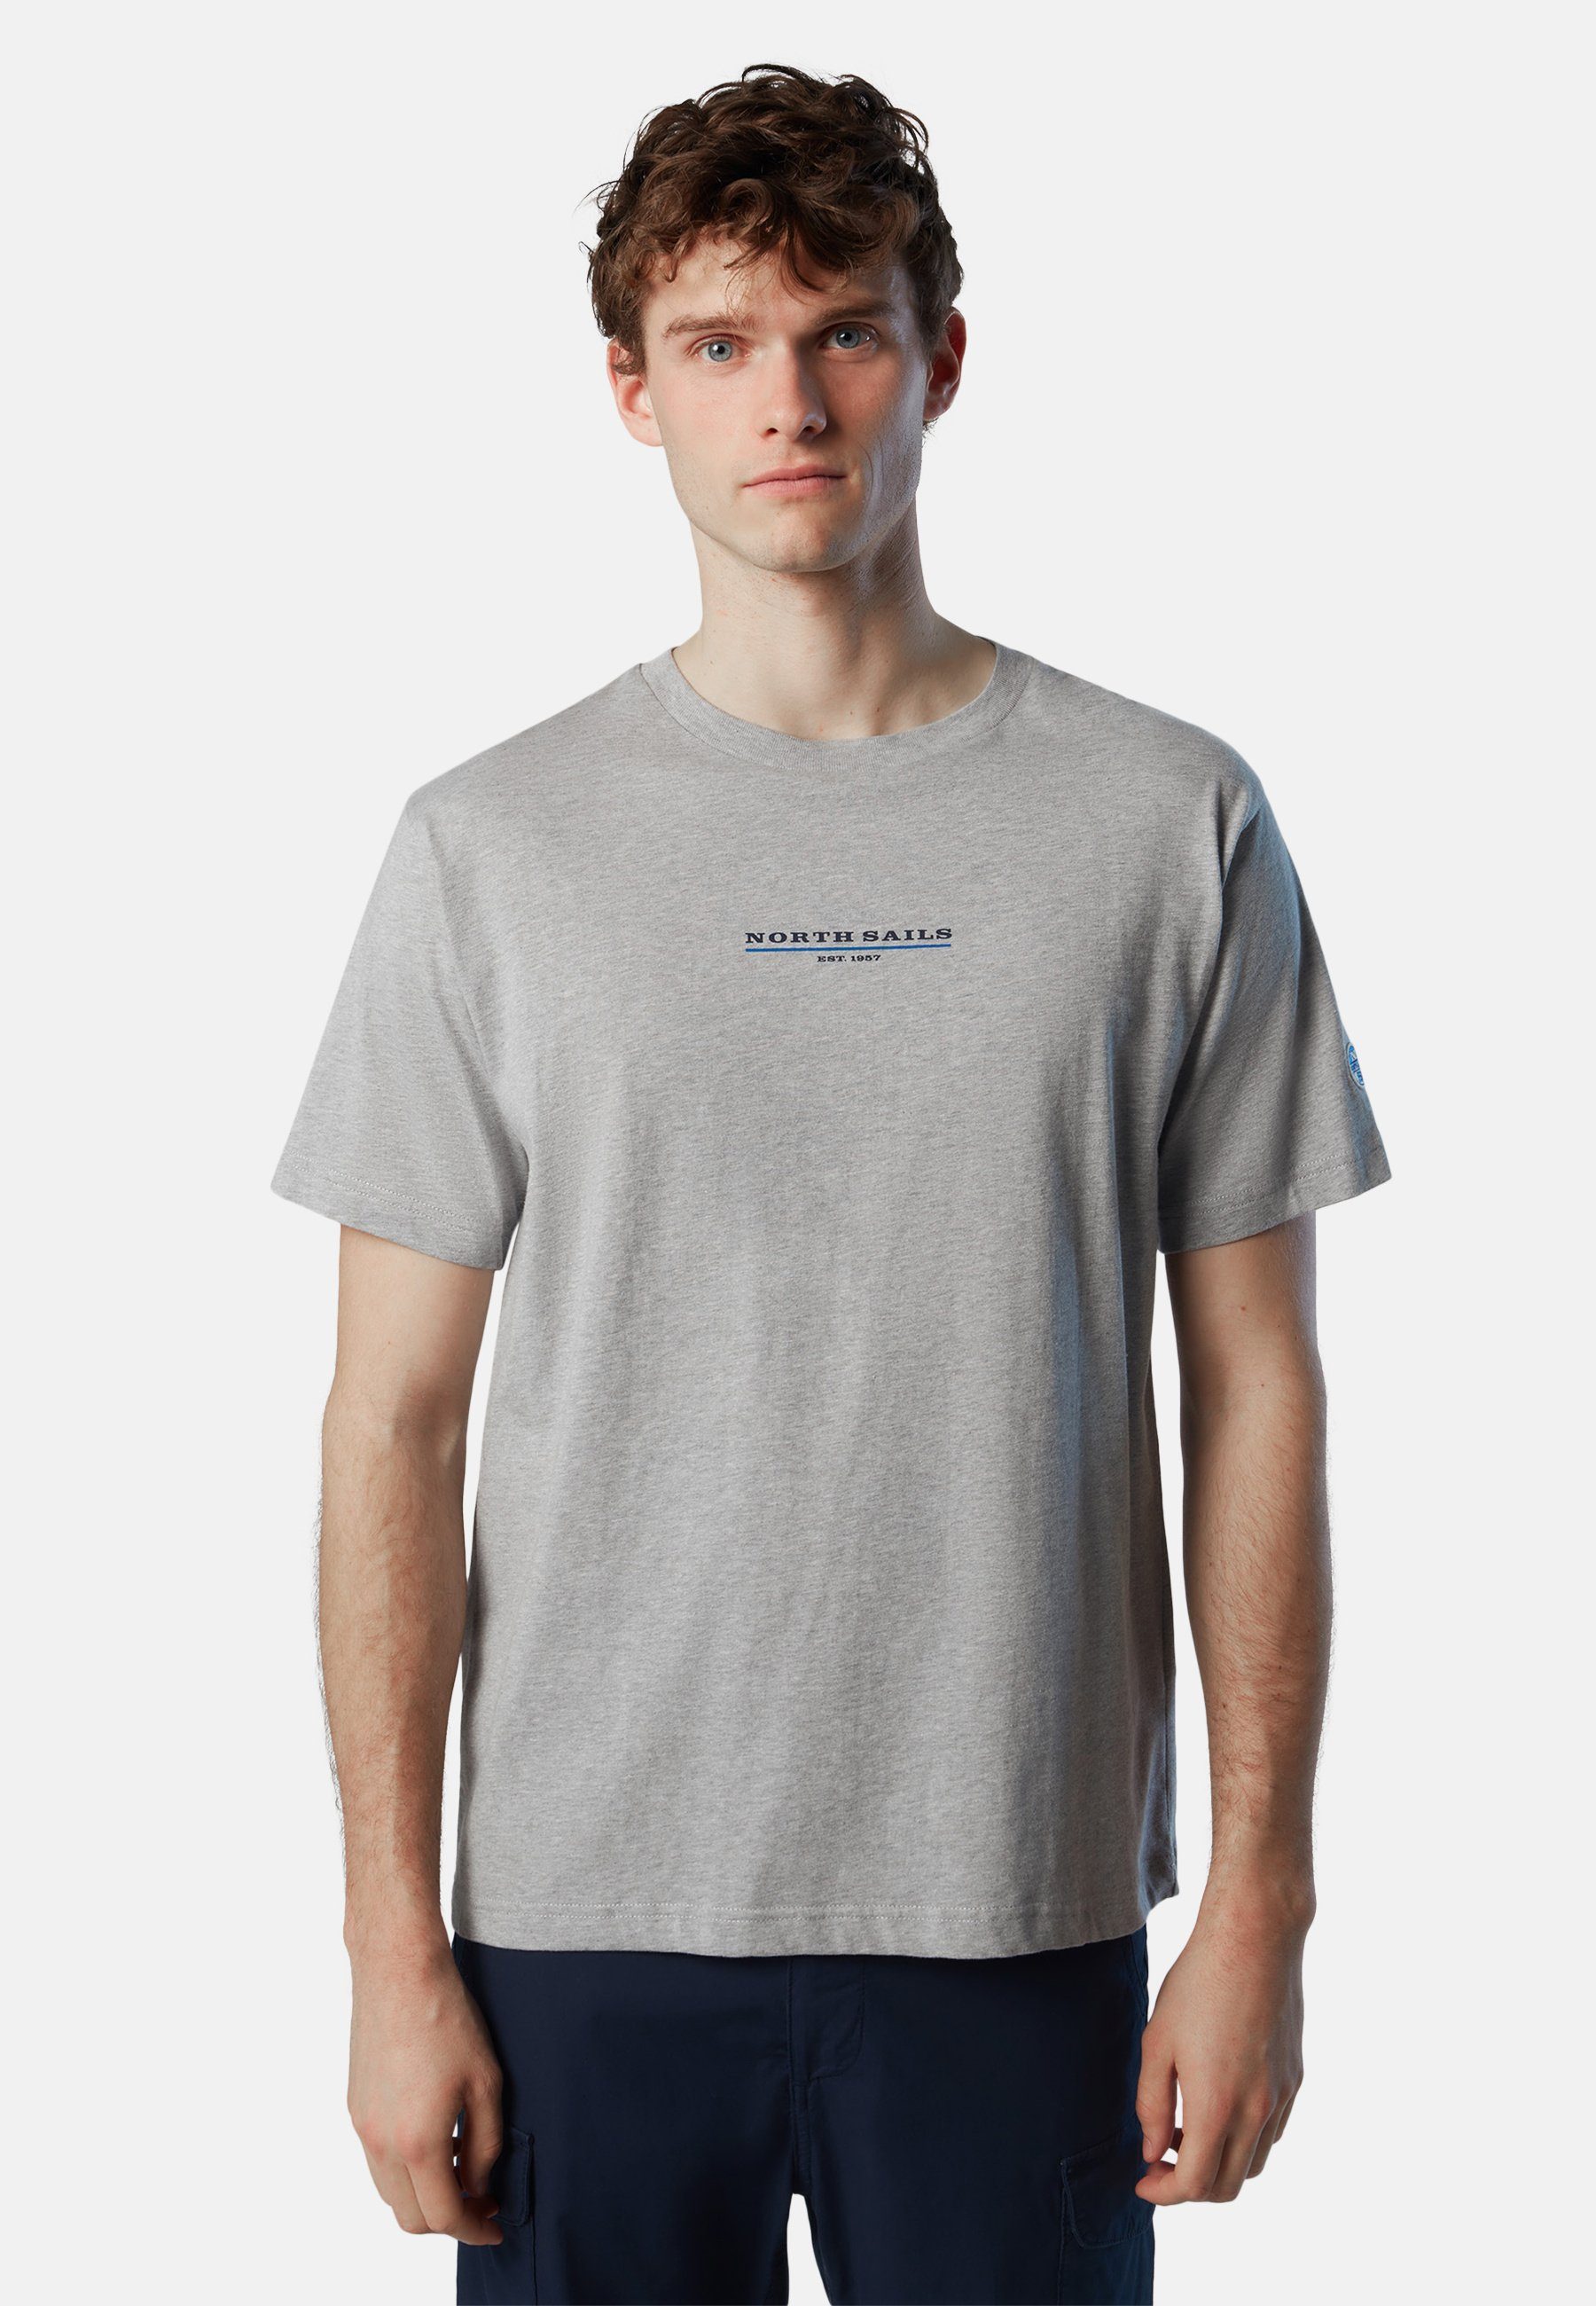 T-Shirt mit Sails Brustaufdruck North T-Shirt grey